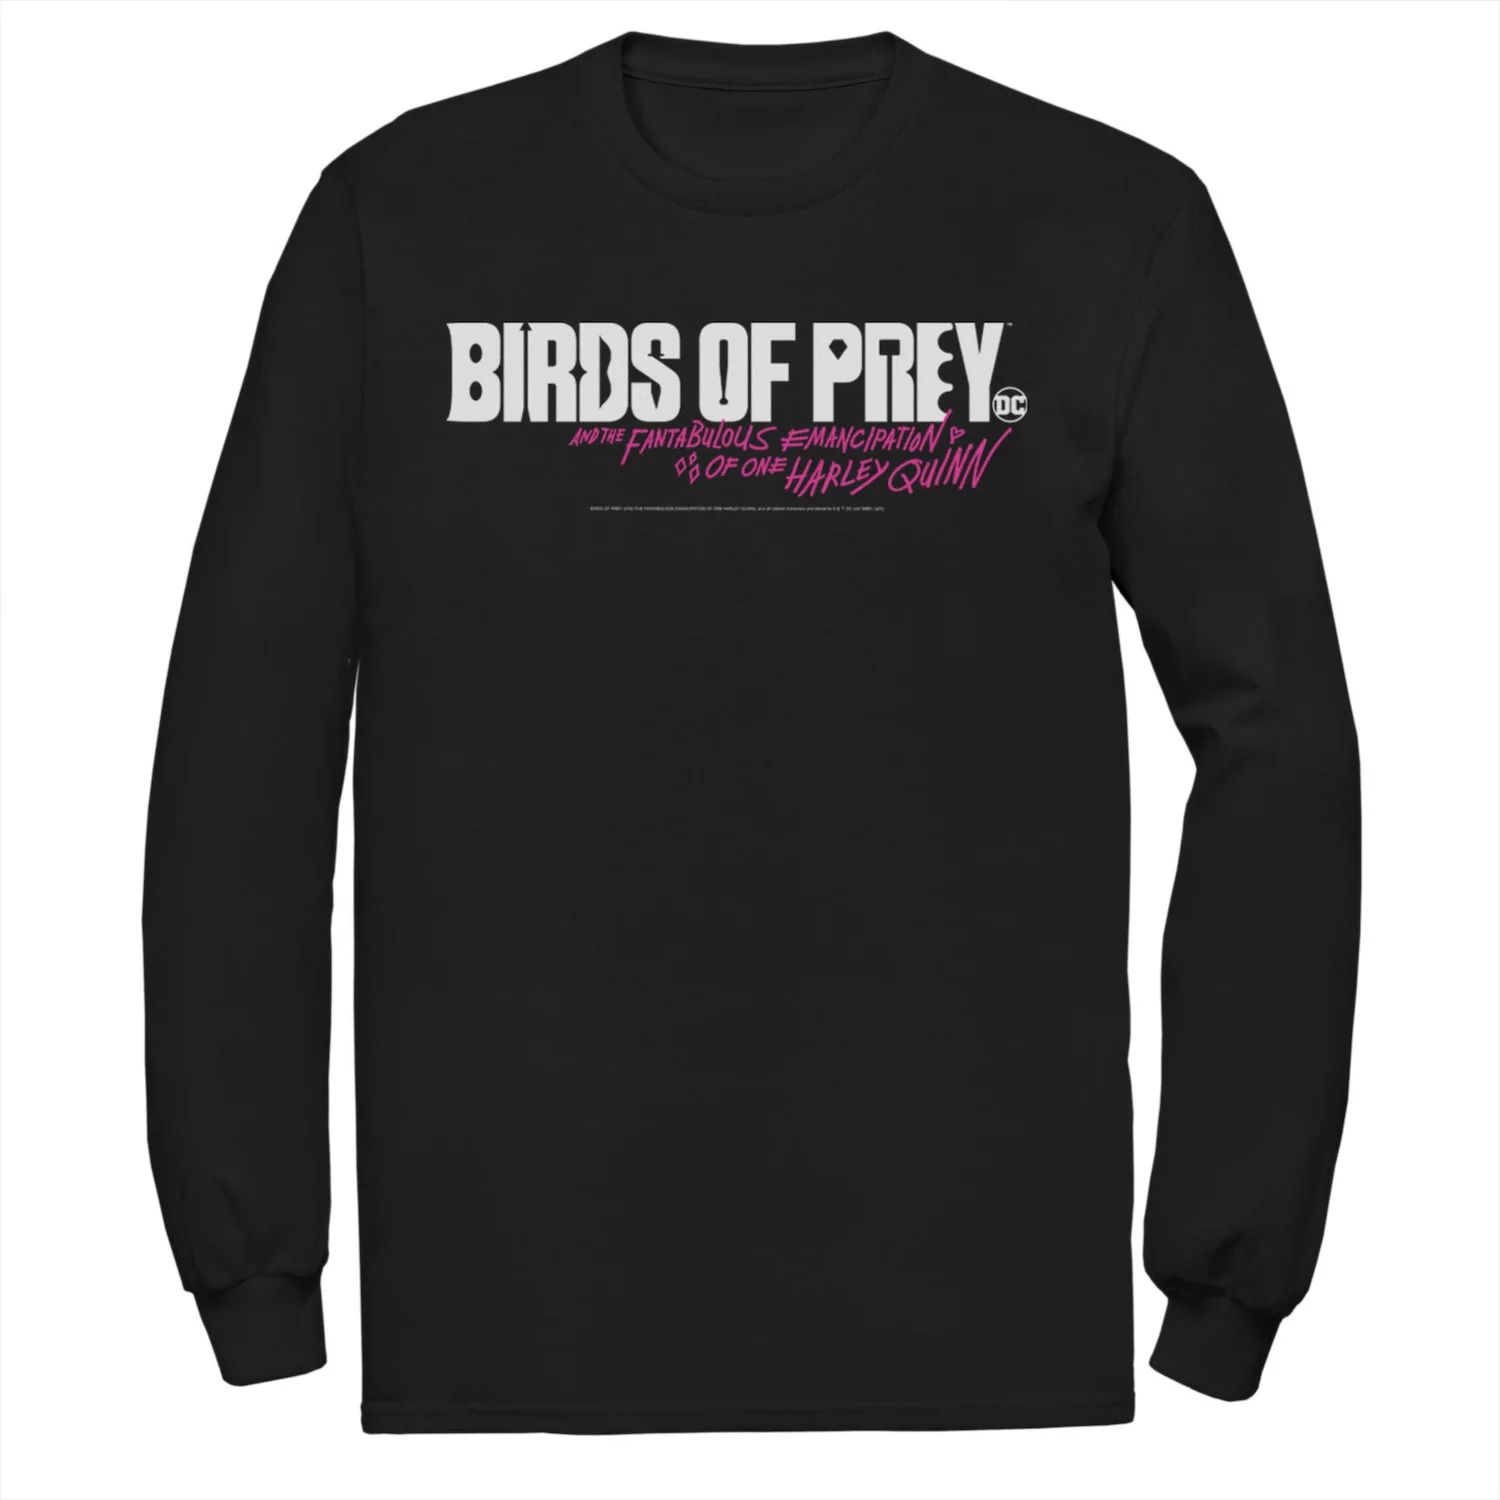 цена Мужская футболка с простым текстовым логотипом «Хищные птицы» DC Comics